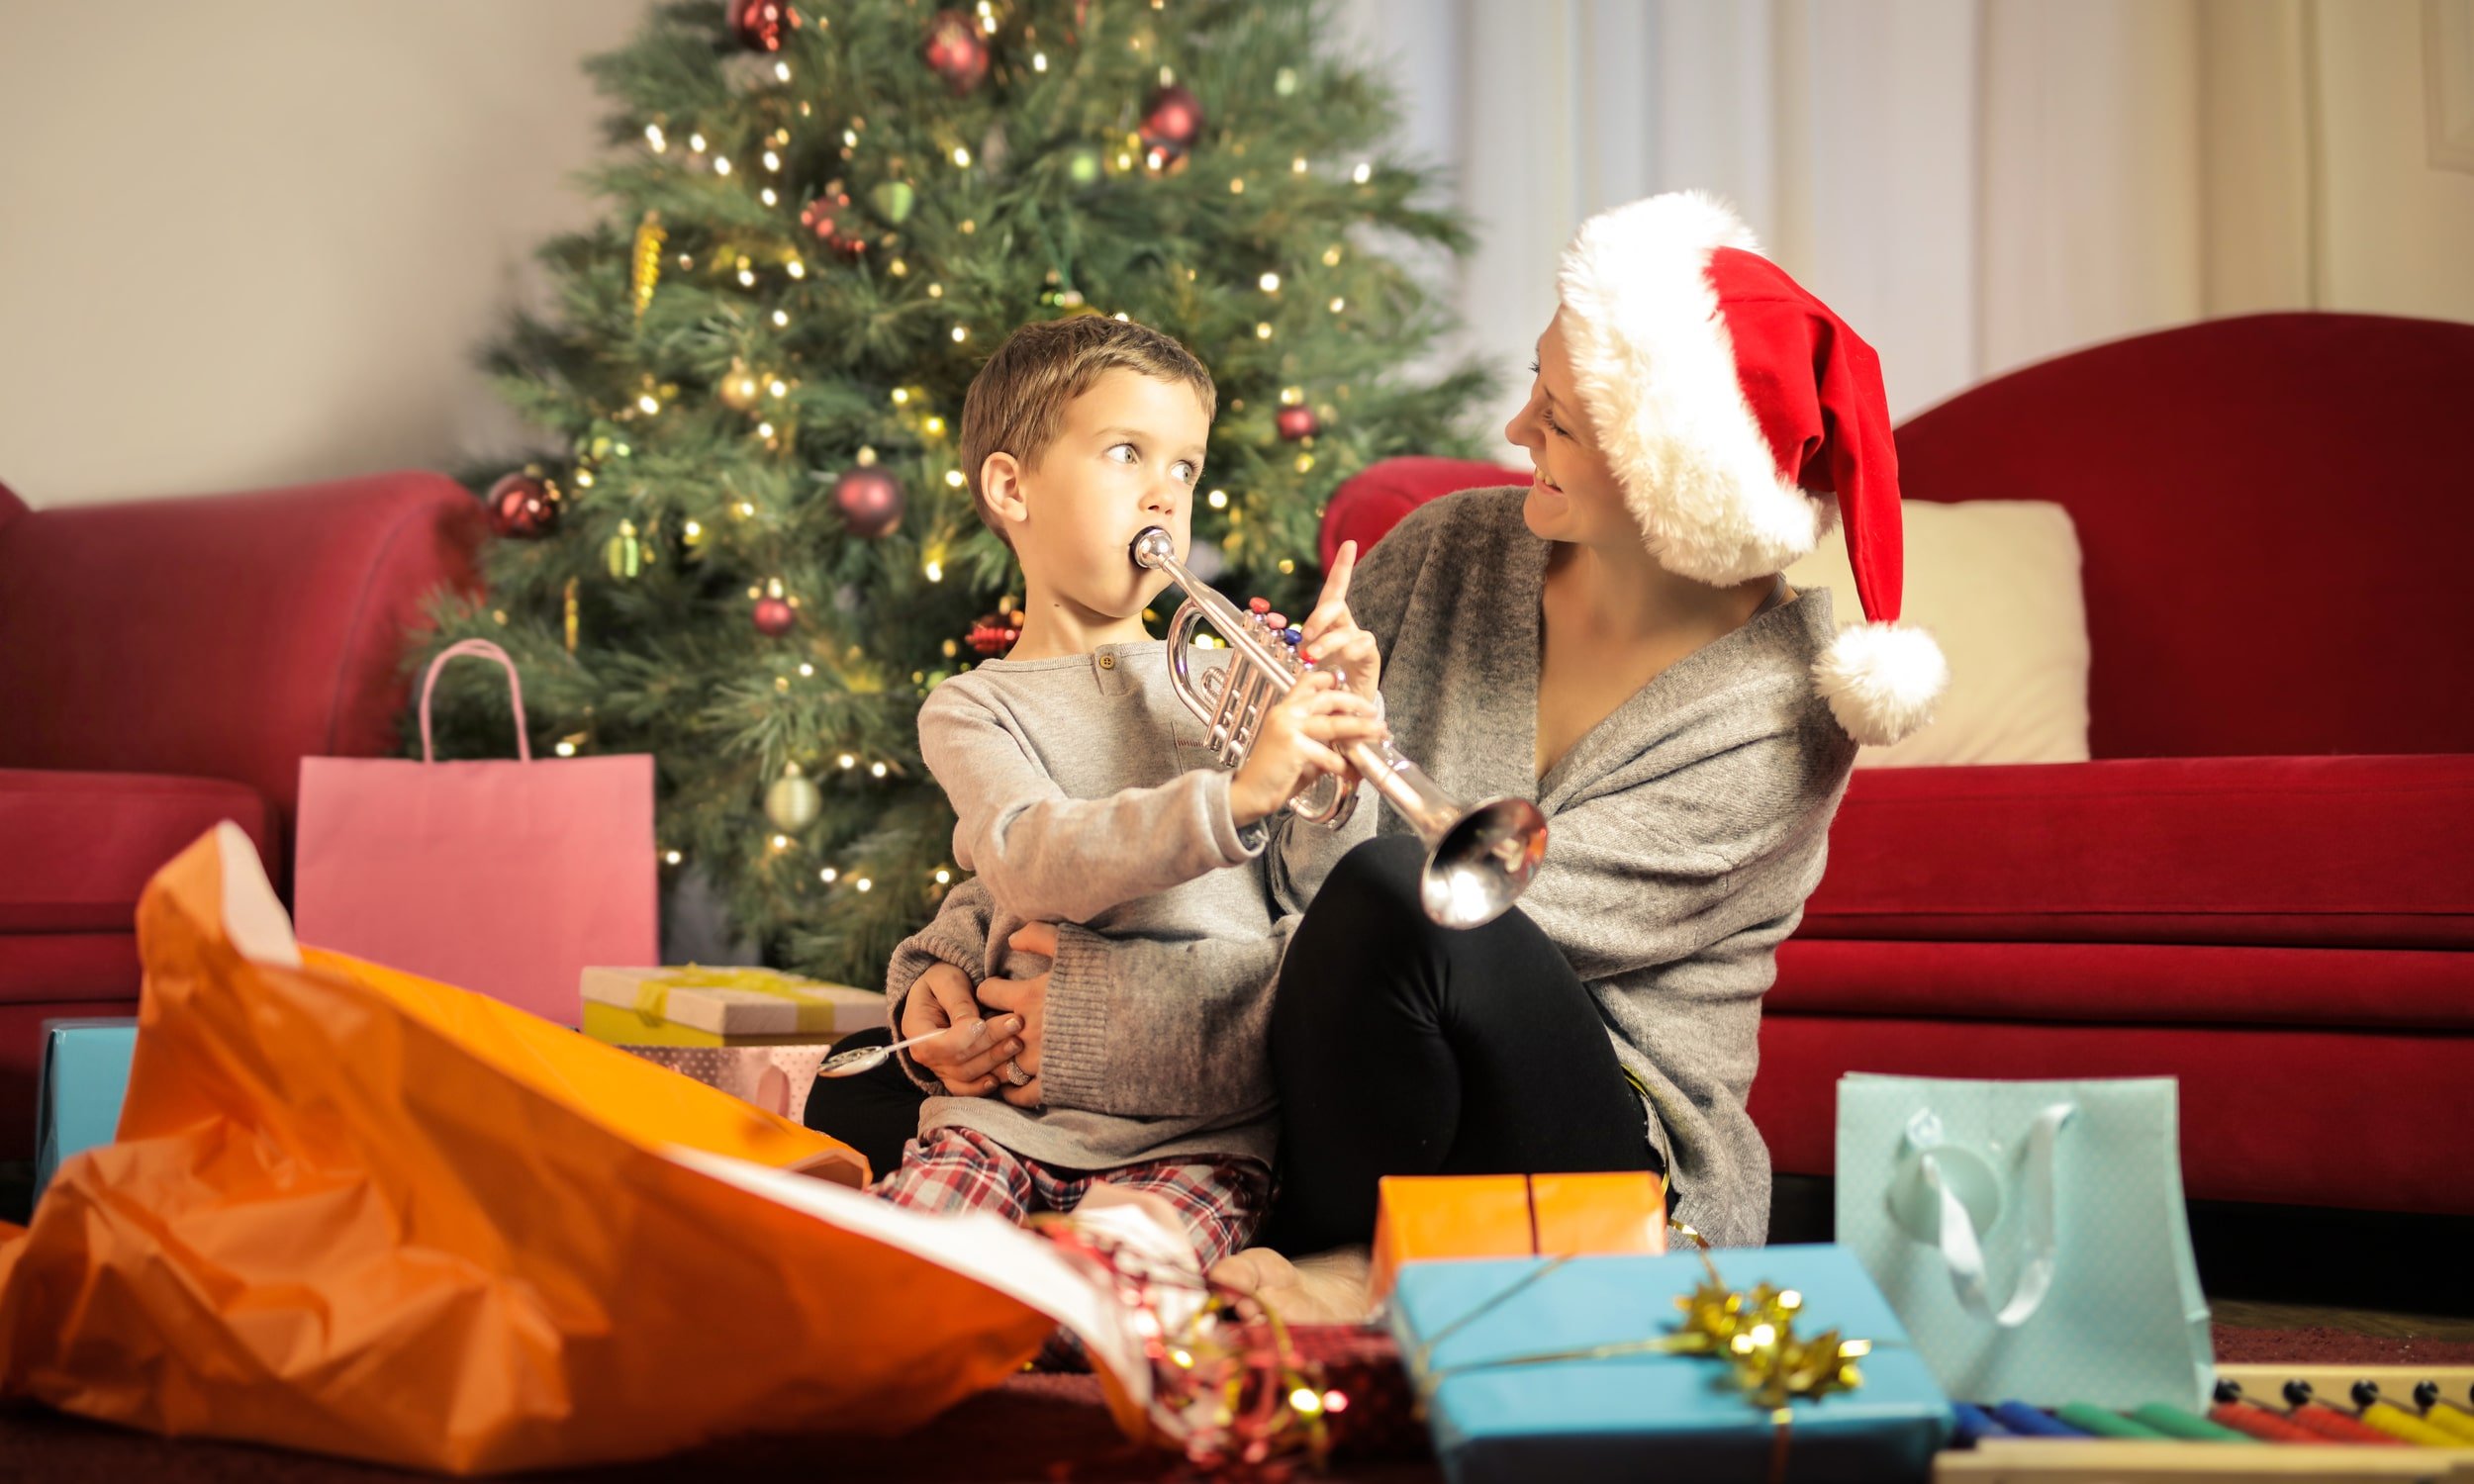 мальчик получил трубу в качестве рождественского подарка